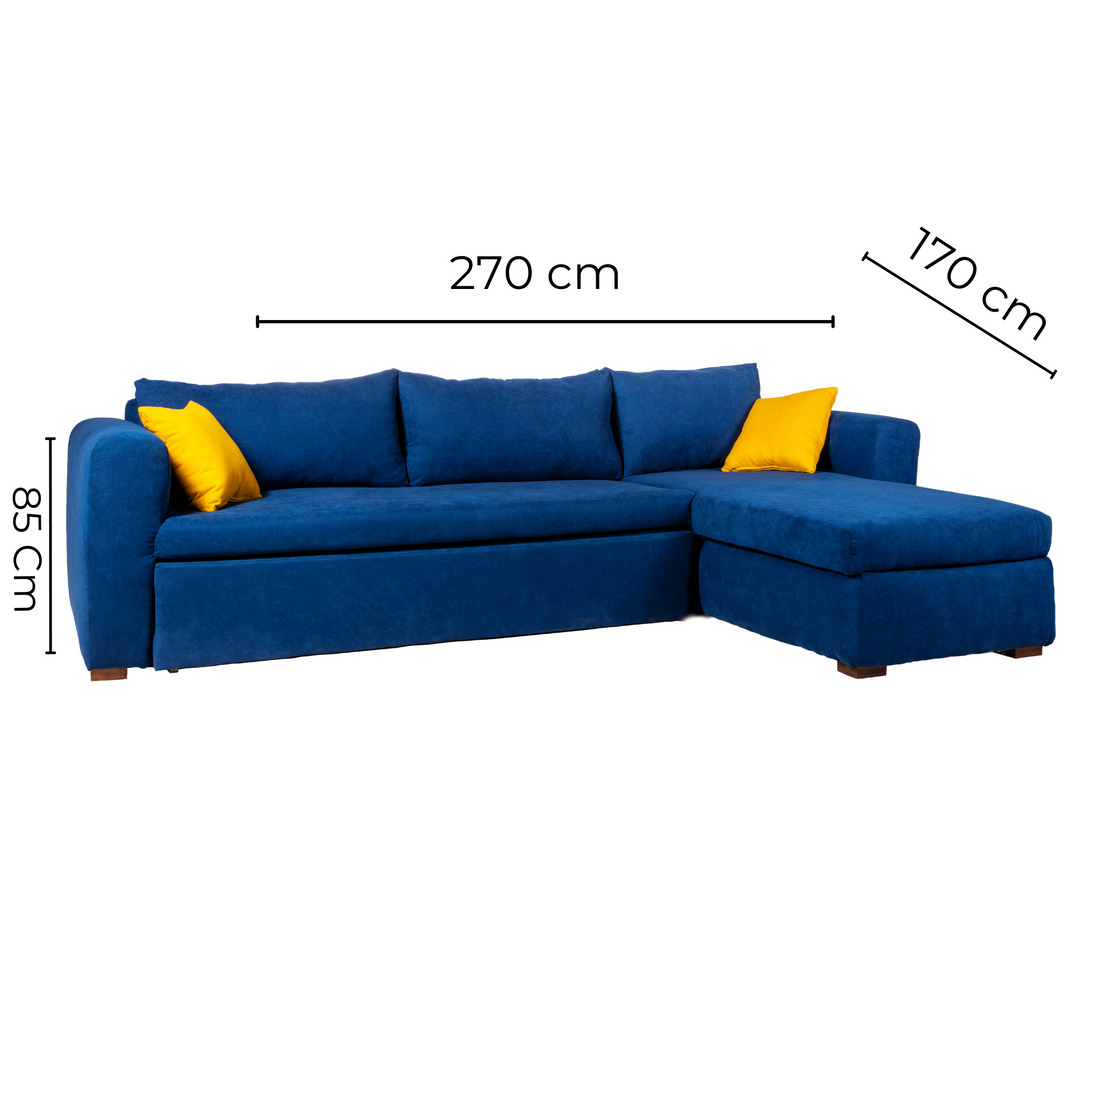 Dormio L-shape Sofa Bed